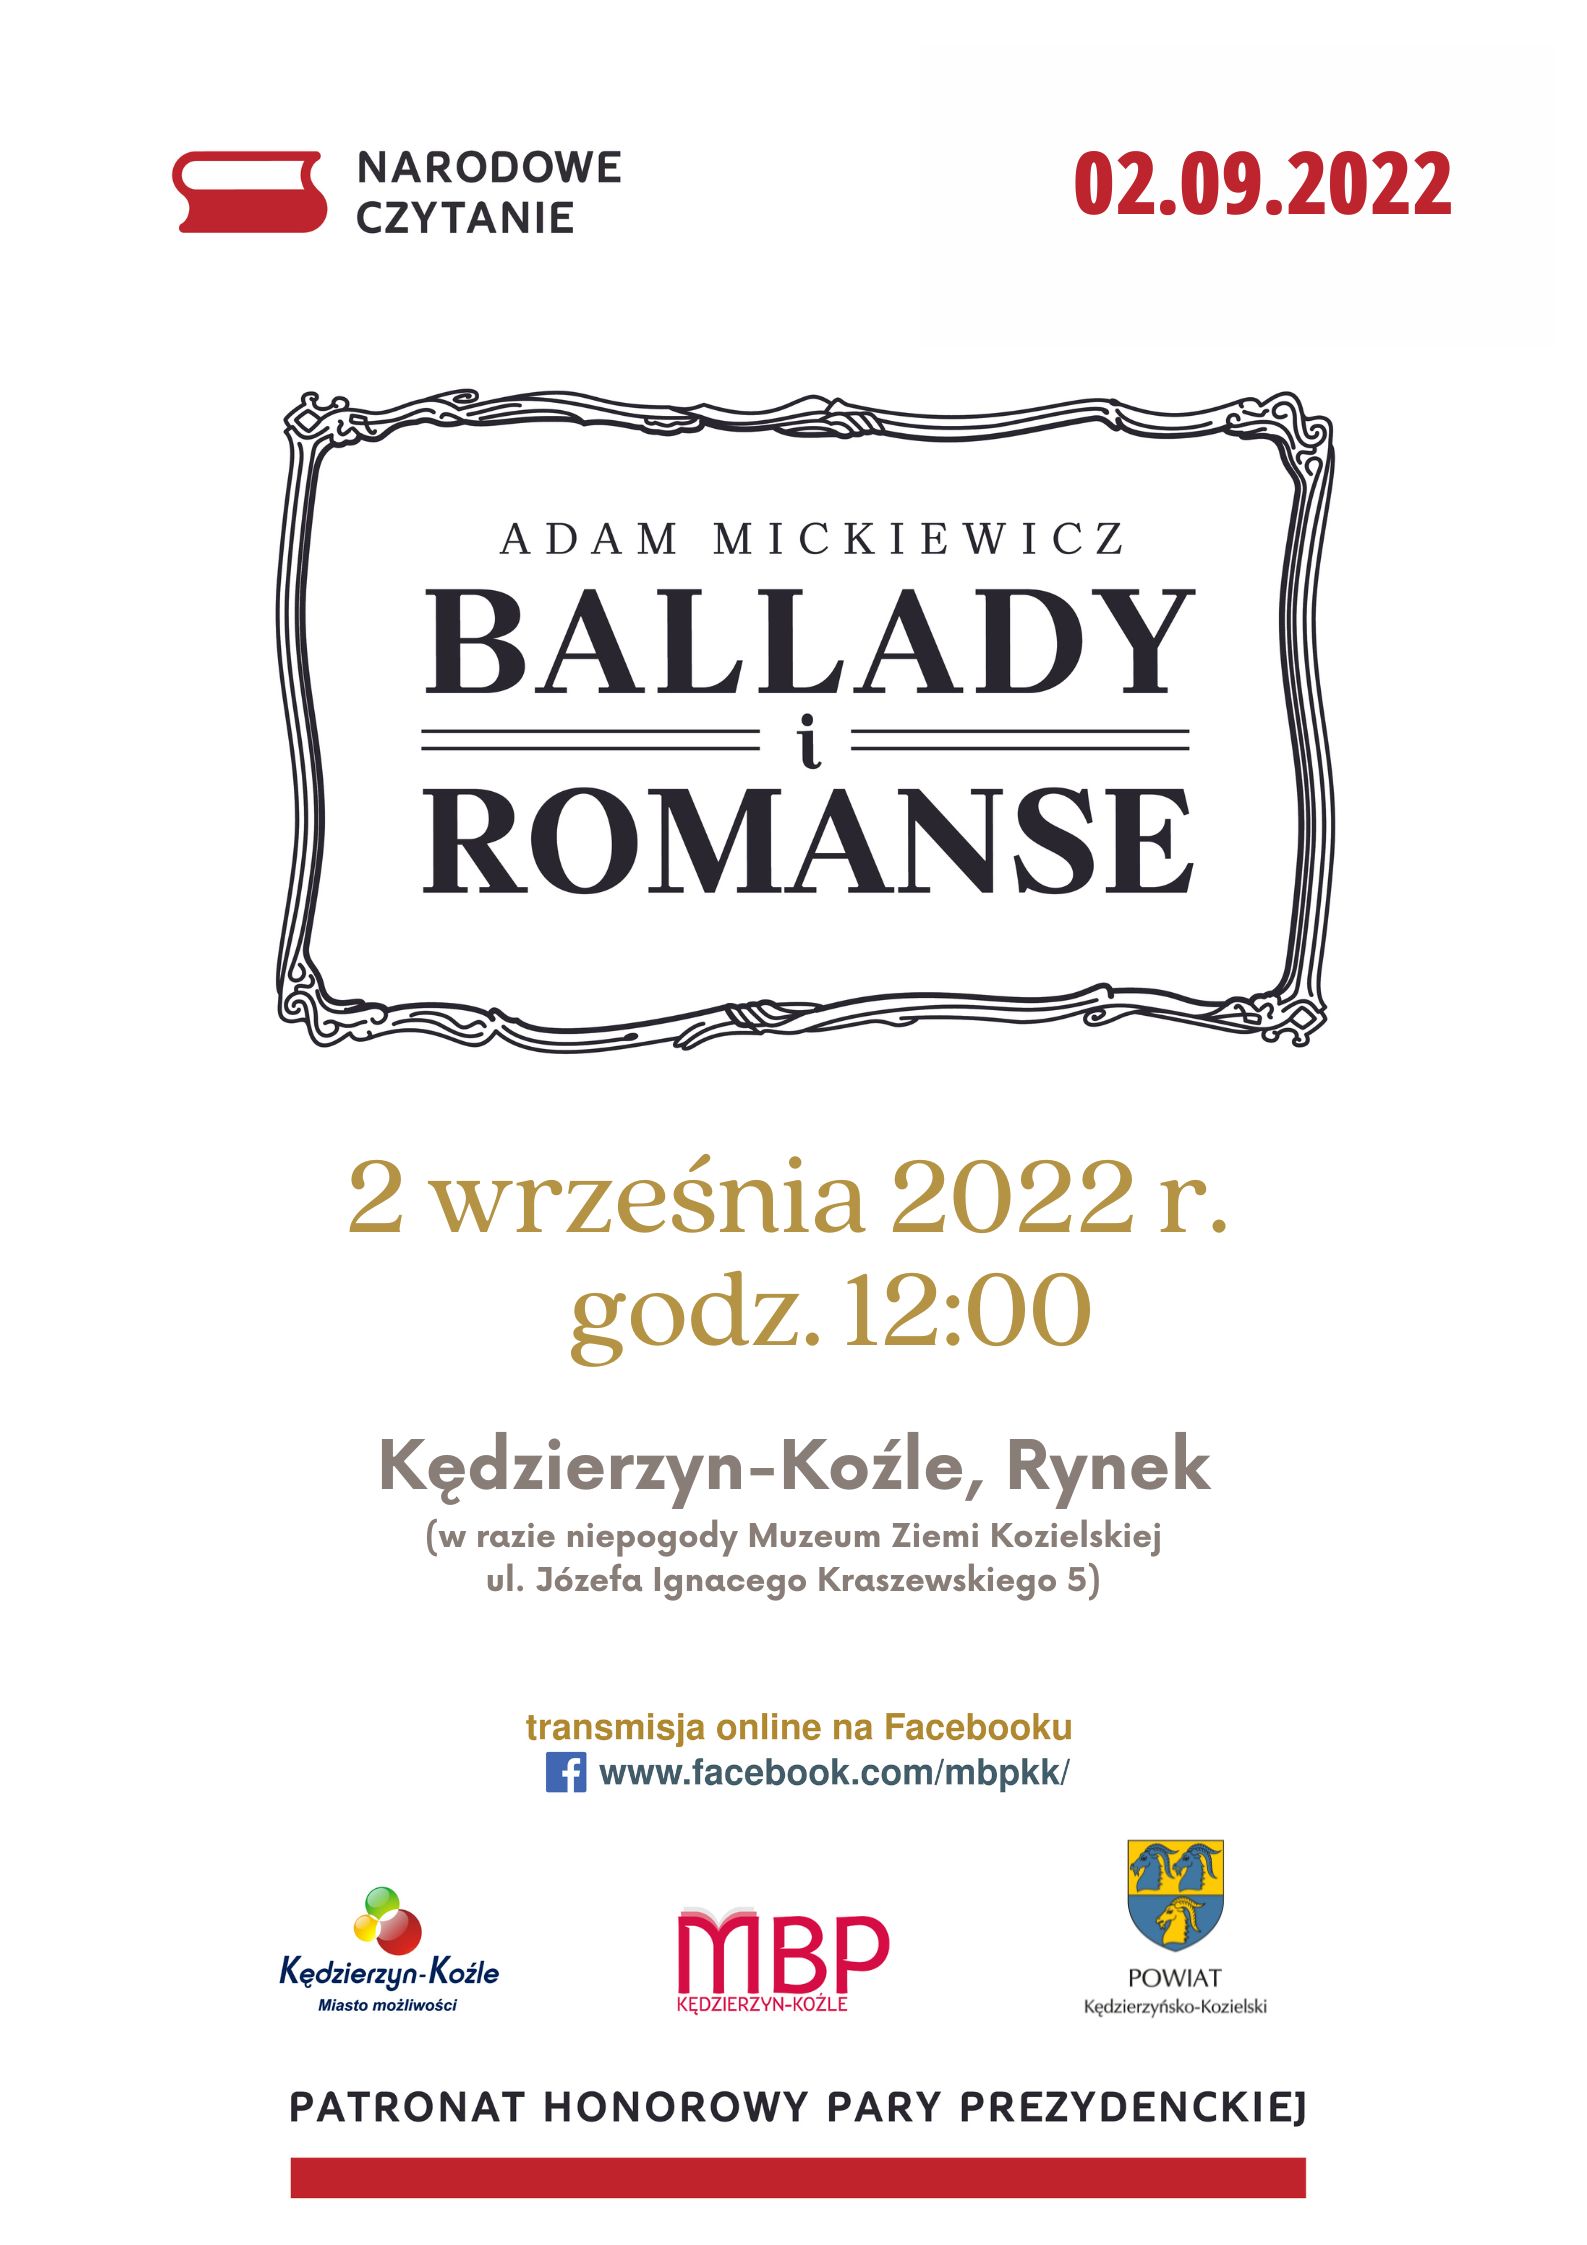 Narodowe Czytanie - Ballady i romanse Adama Mickiewicza